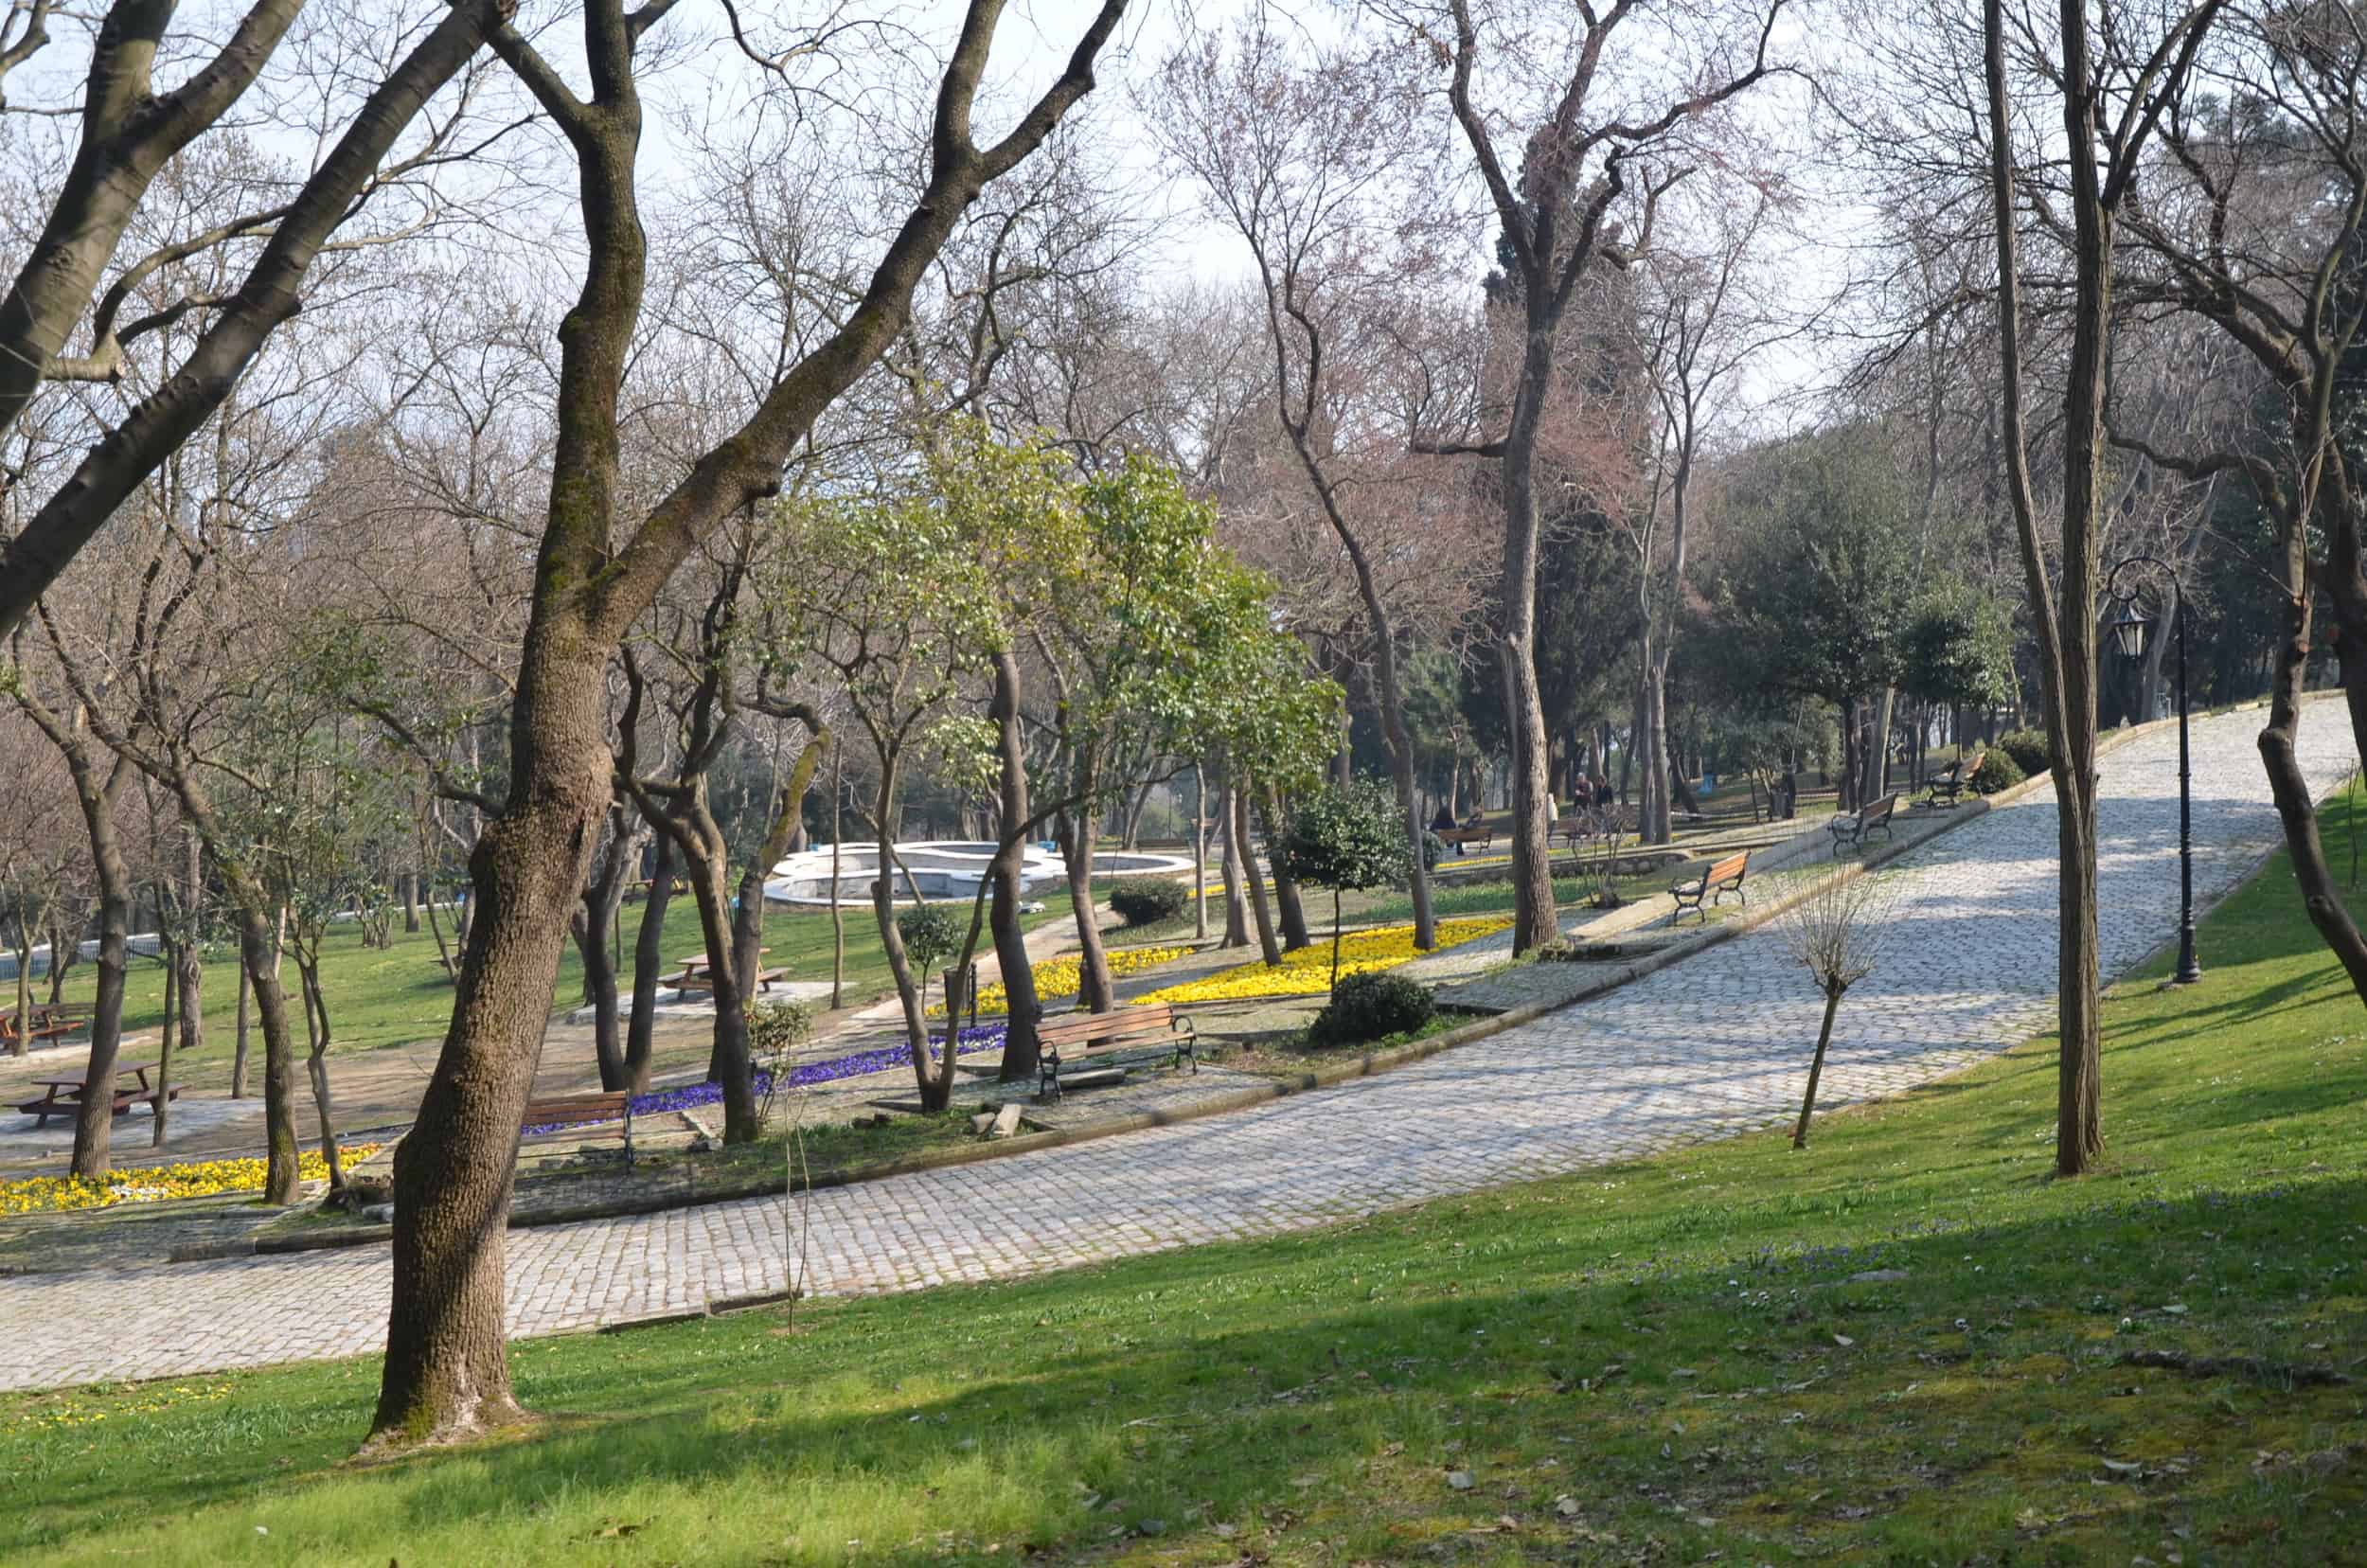 Yıldız Park in Istanbul, Turkey